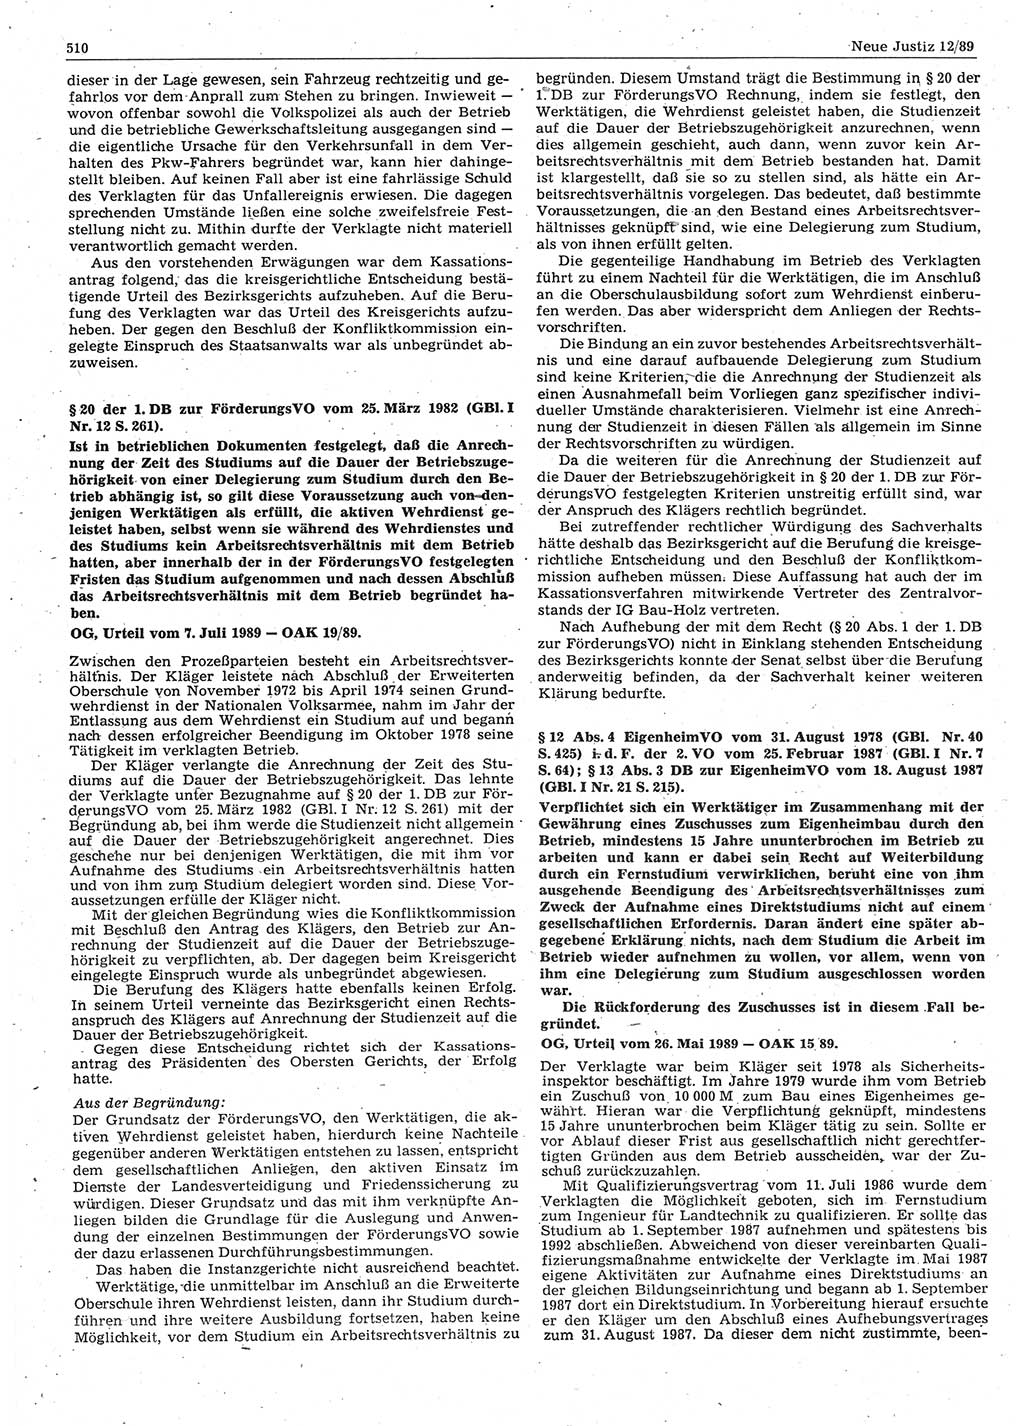 Neue Justiz (NJ), Zeitschrift für sozialistisches Recht und Gesetzlichkeit [Deutsche Demokratische Republik (DDR)], 43. Jahrgang 1989, Seite 510 (NJ DDR 1989, S. 510)